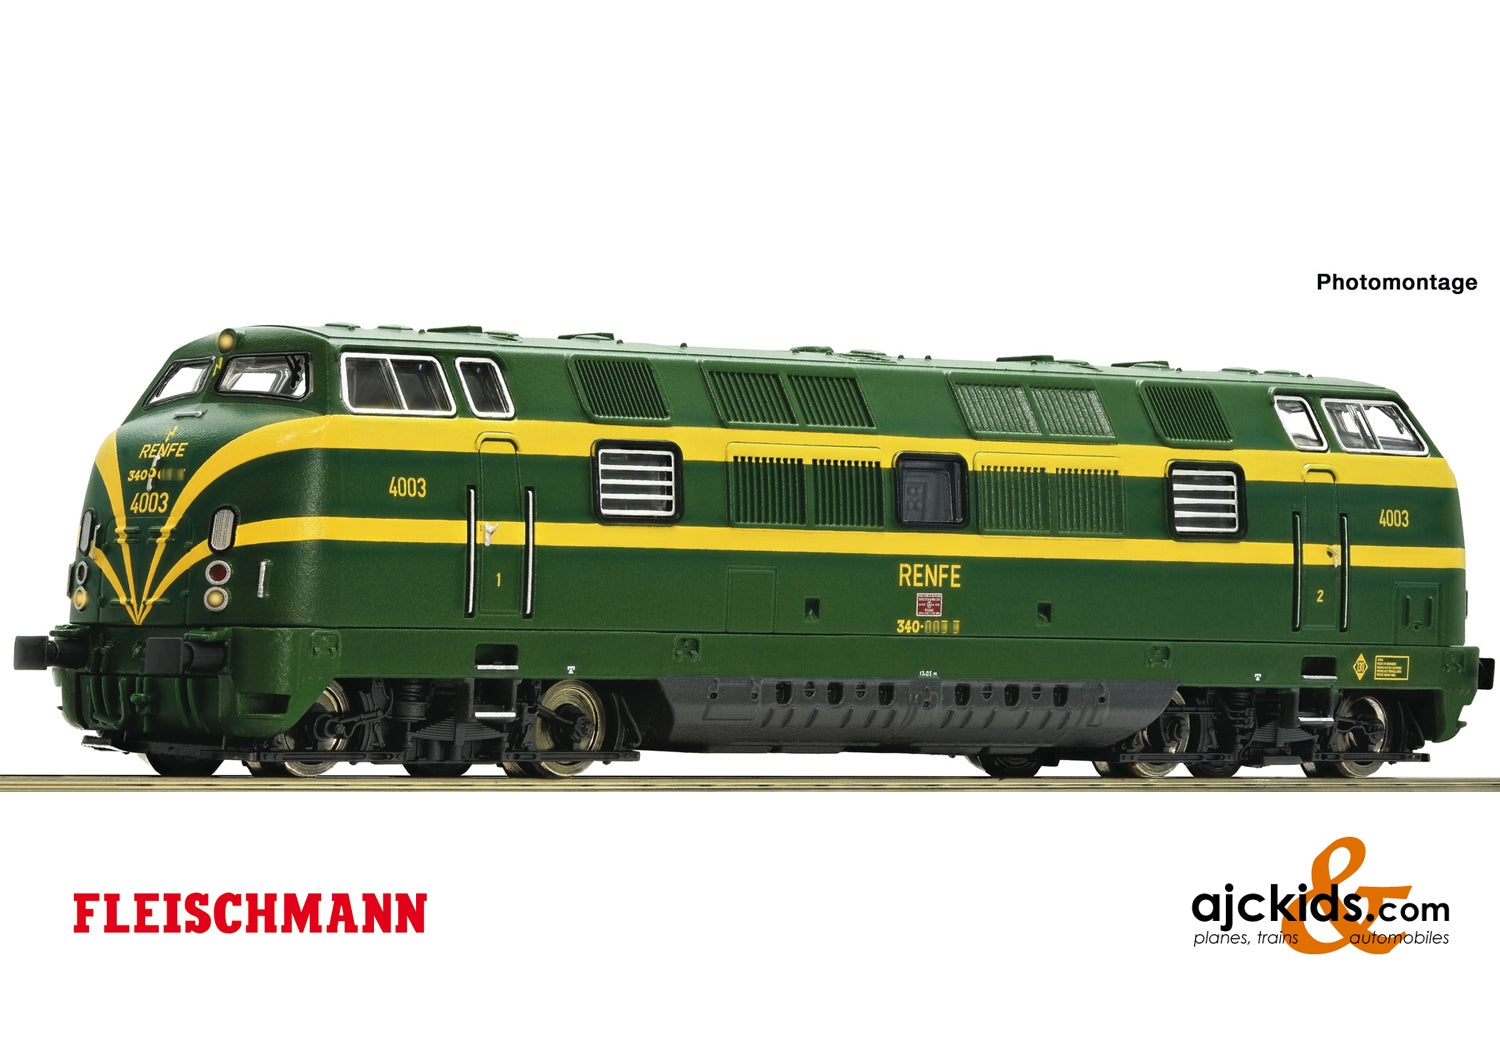 Fleischmann 725010 - Diesel locomotive series 340